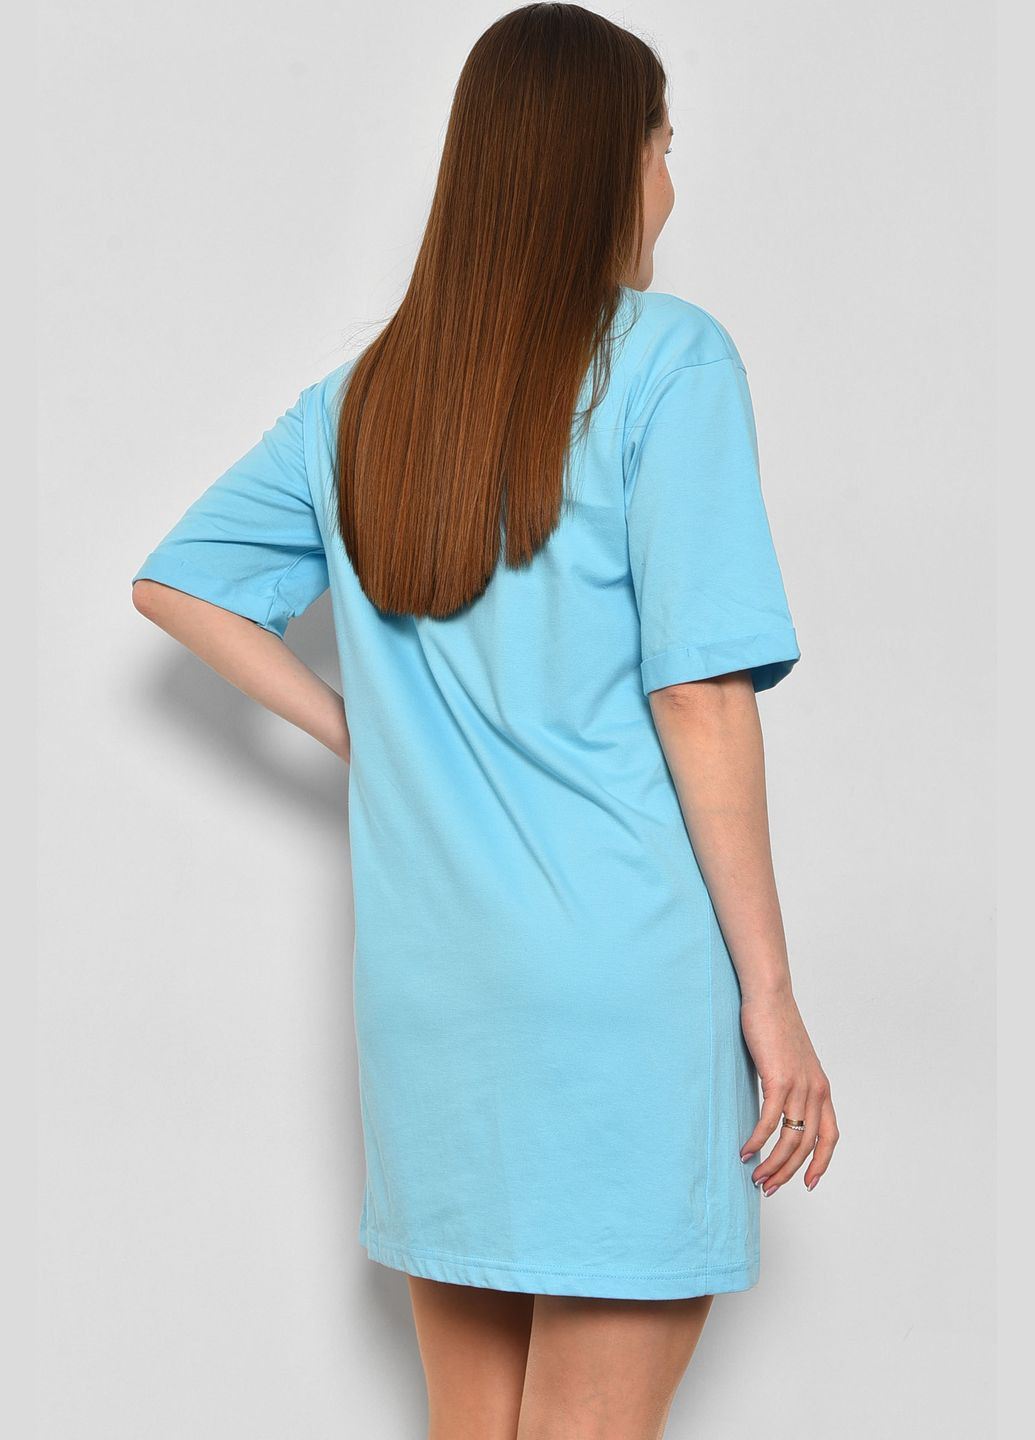 Туника женская из ткани лакоста голубого цвета Let's Shop (292630396)